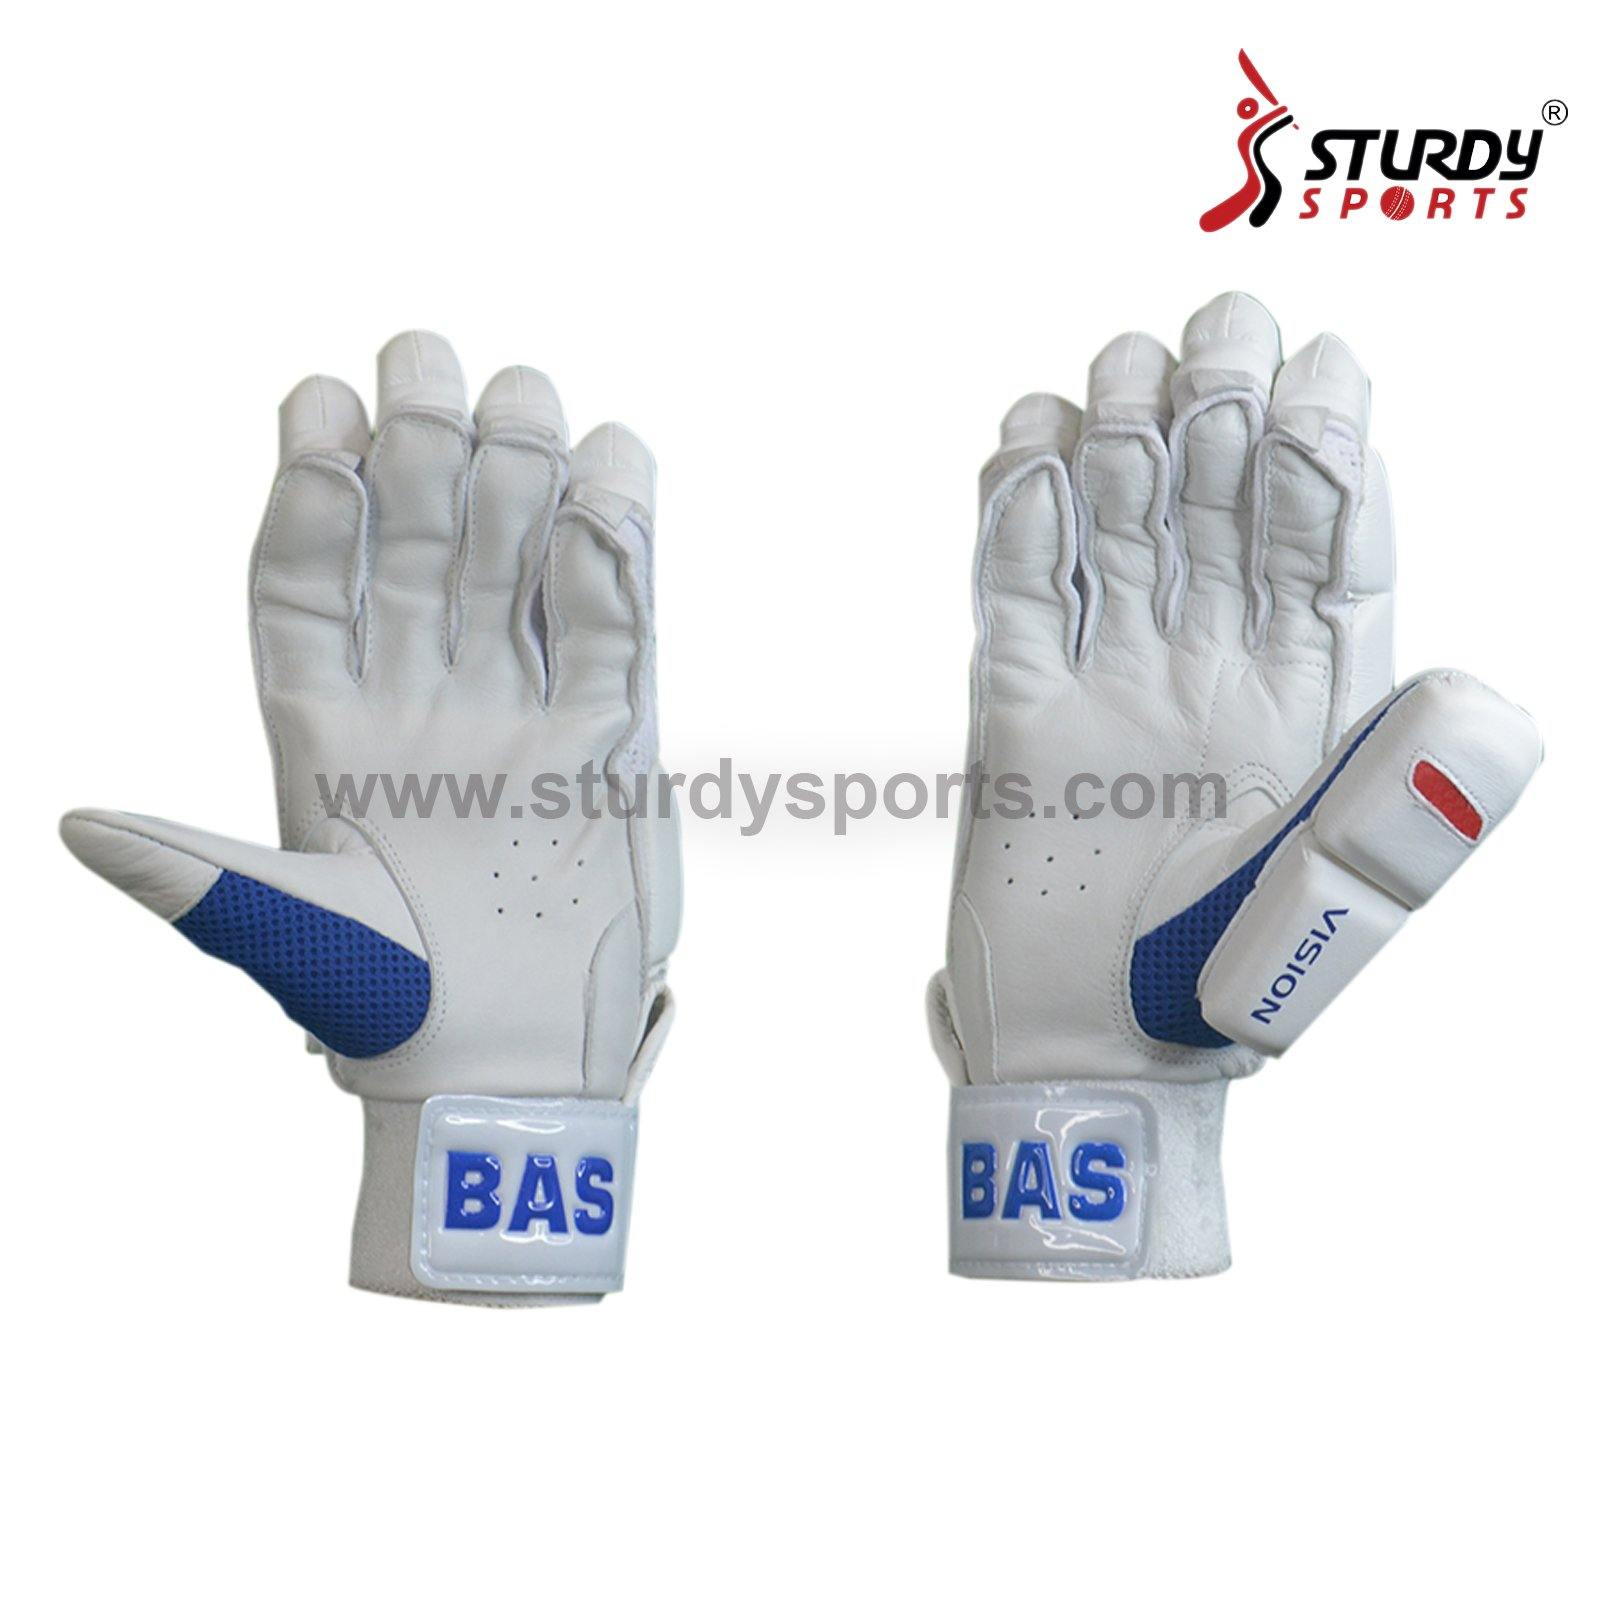 BAS Vision Batting Cricket Gloves - Senior